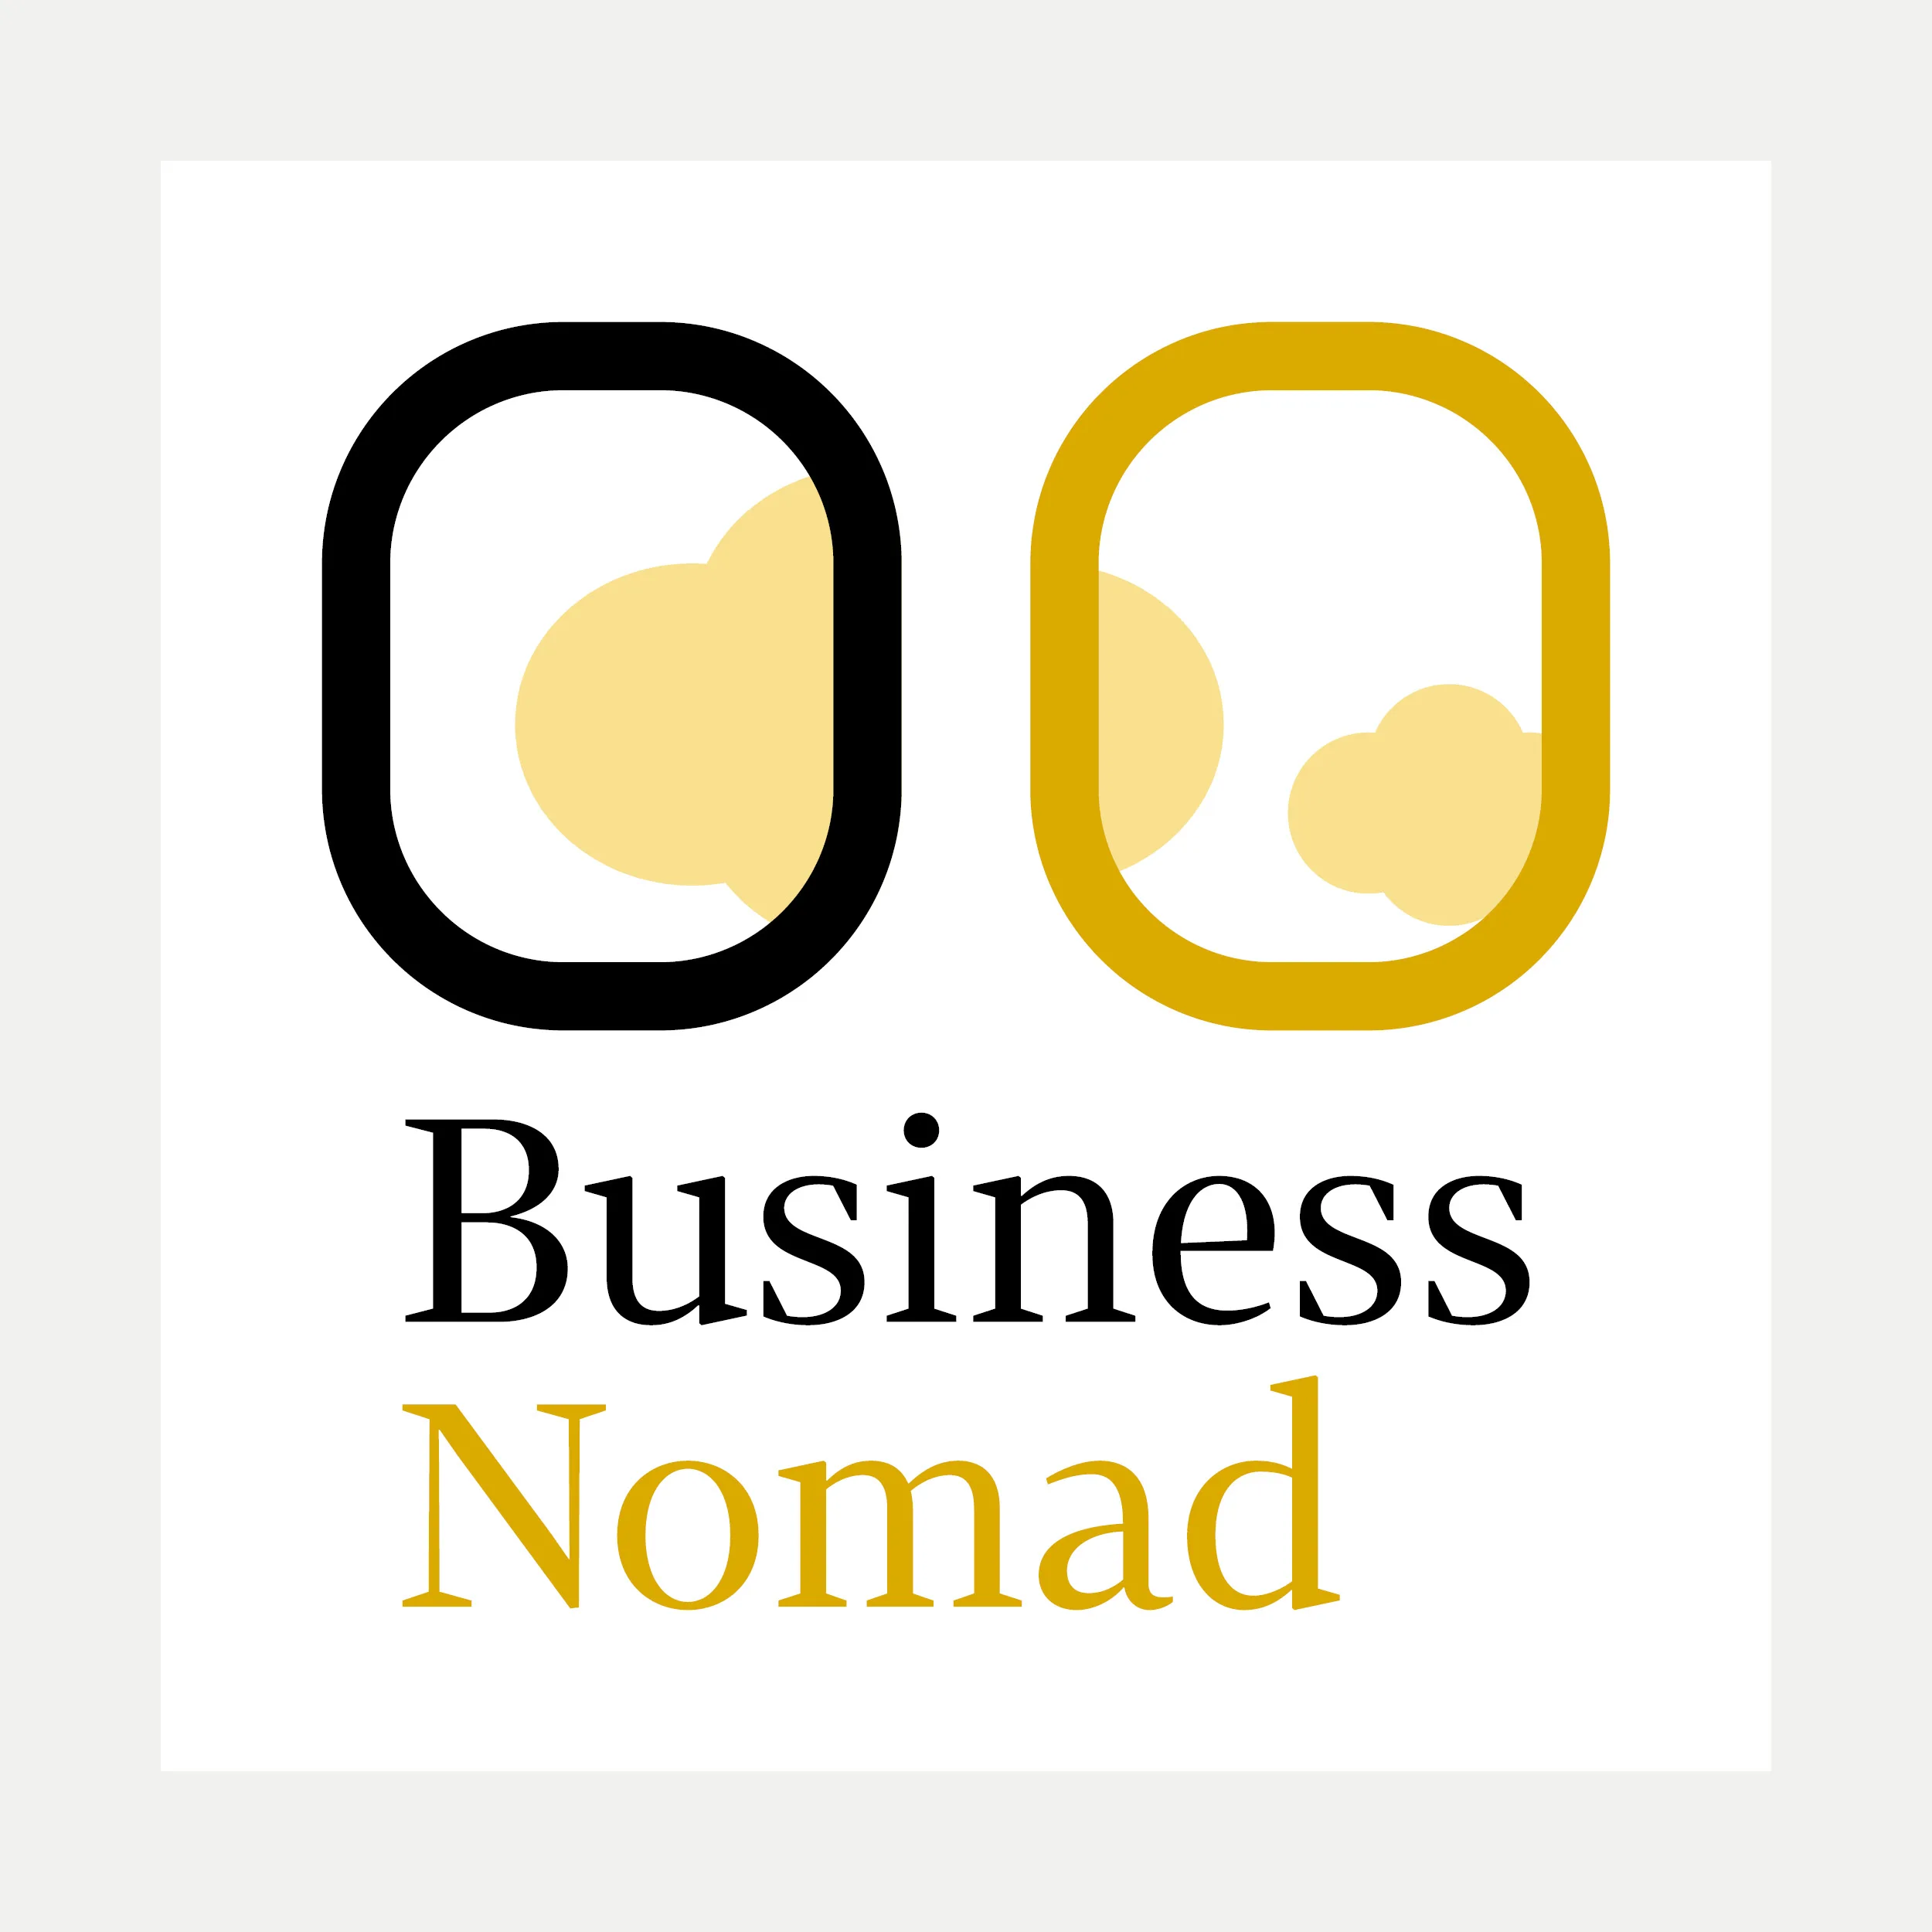 Business Nomad: Logo & Label